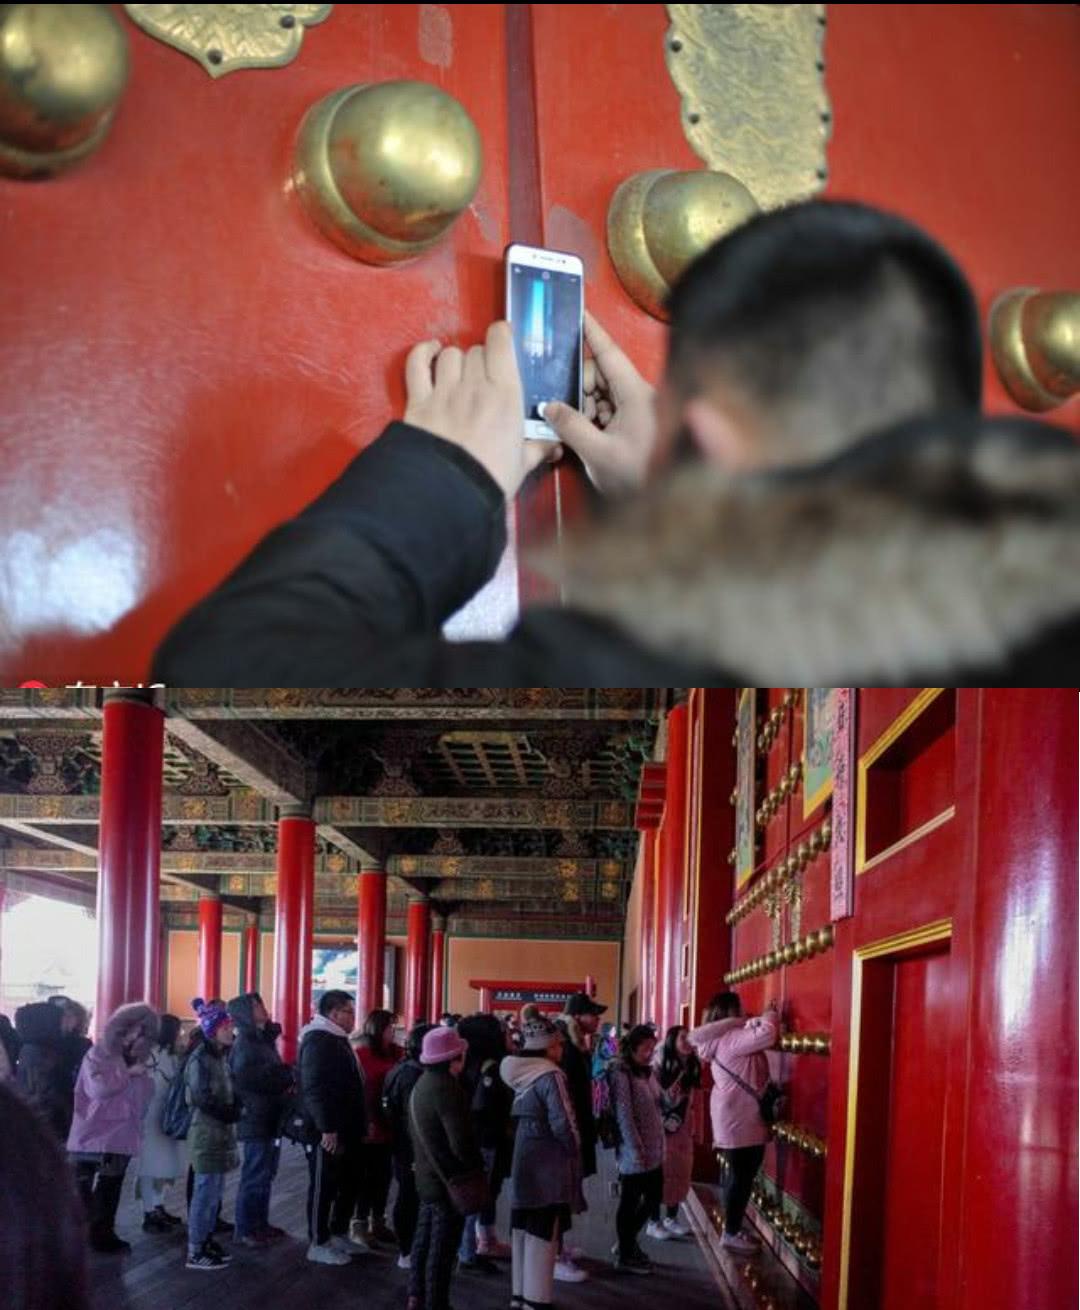 故宫一门缝莫名火了:引游客排长龙拍照,原因让工作人员很无奈!